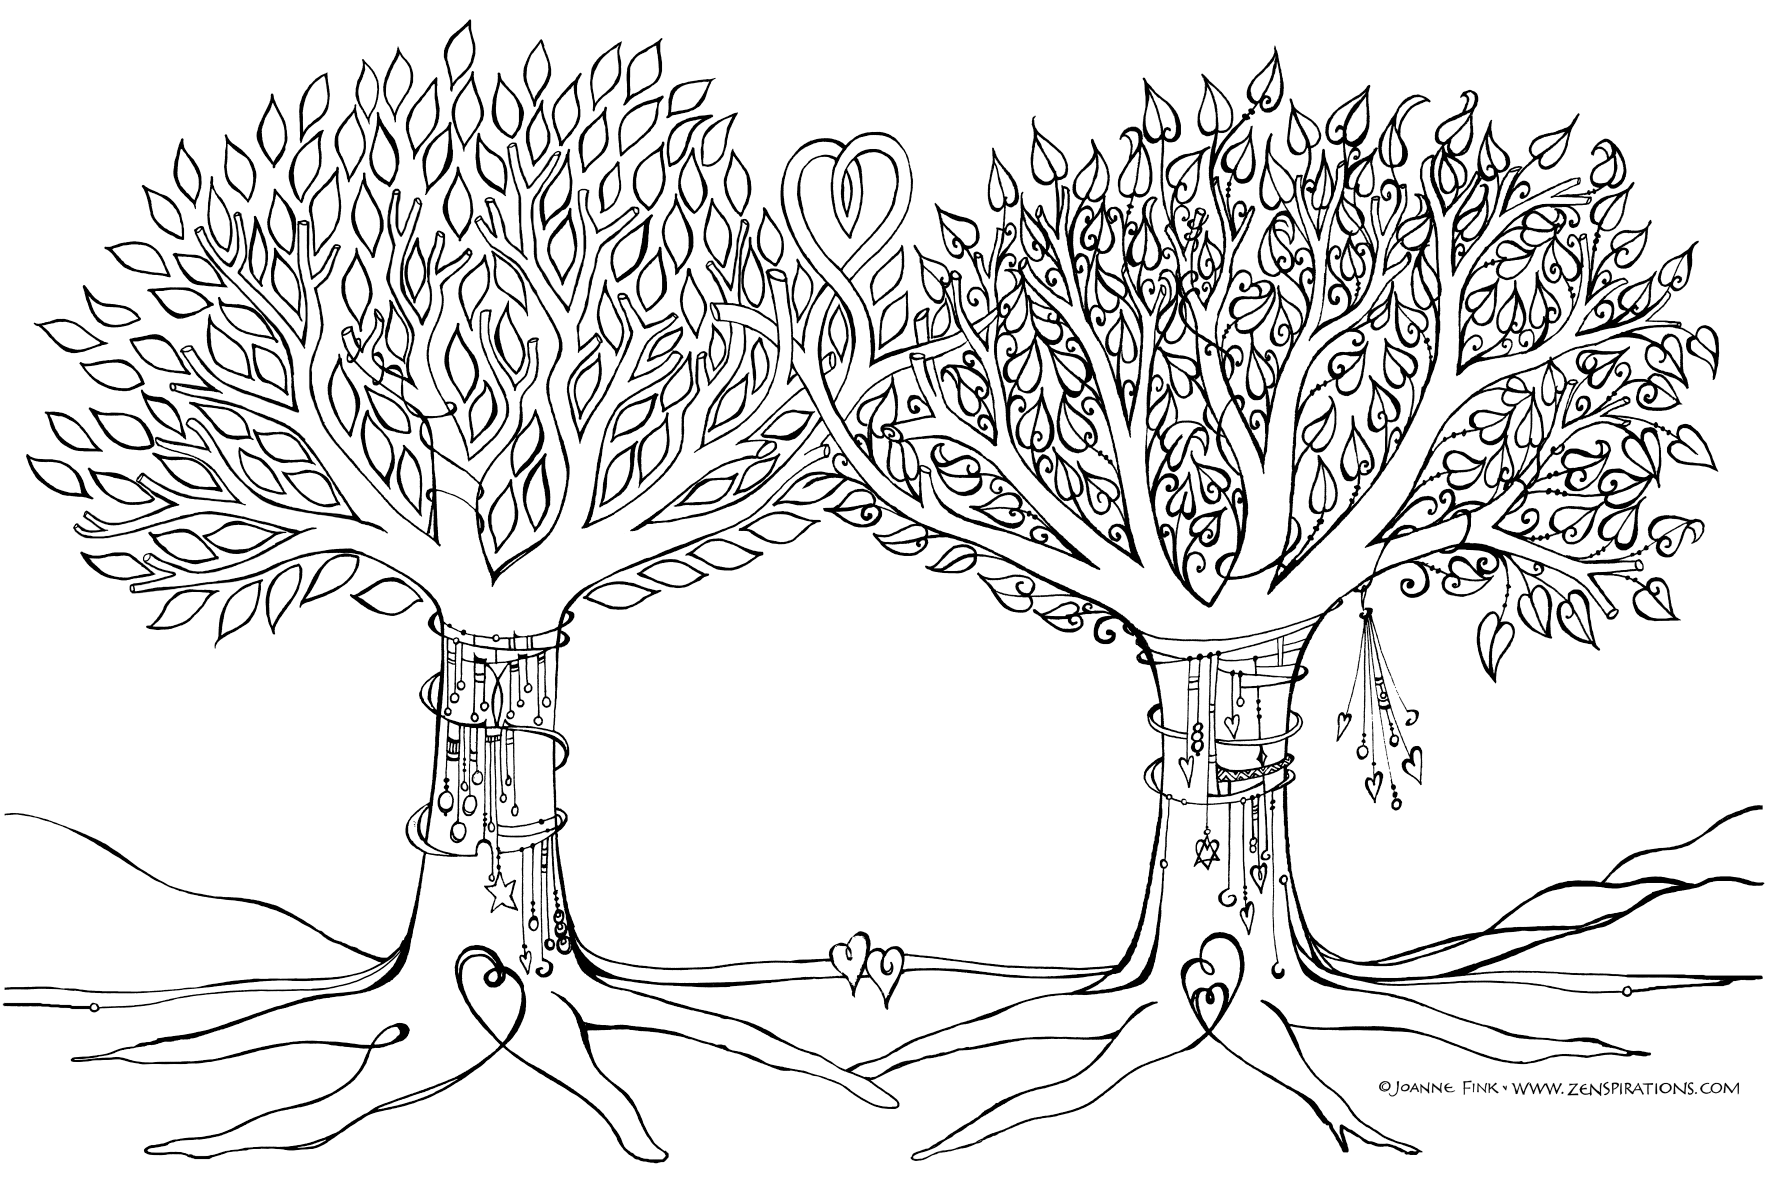 Скопировать дерево. Генеалогическое дерево раскраска. Семейное дерево раскраска. Дерево для семейного древа. Дерево жизни раскраска.